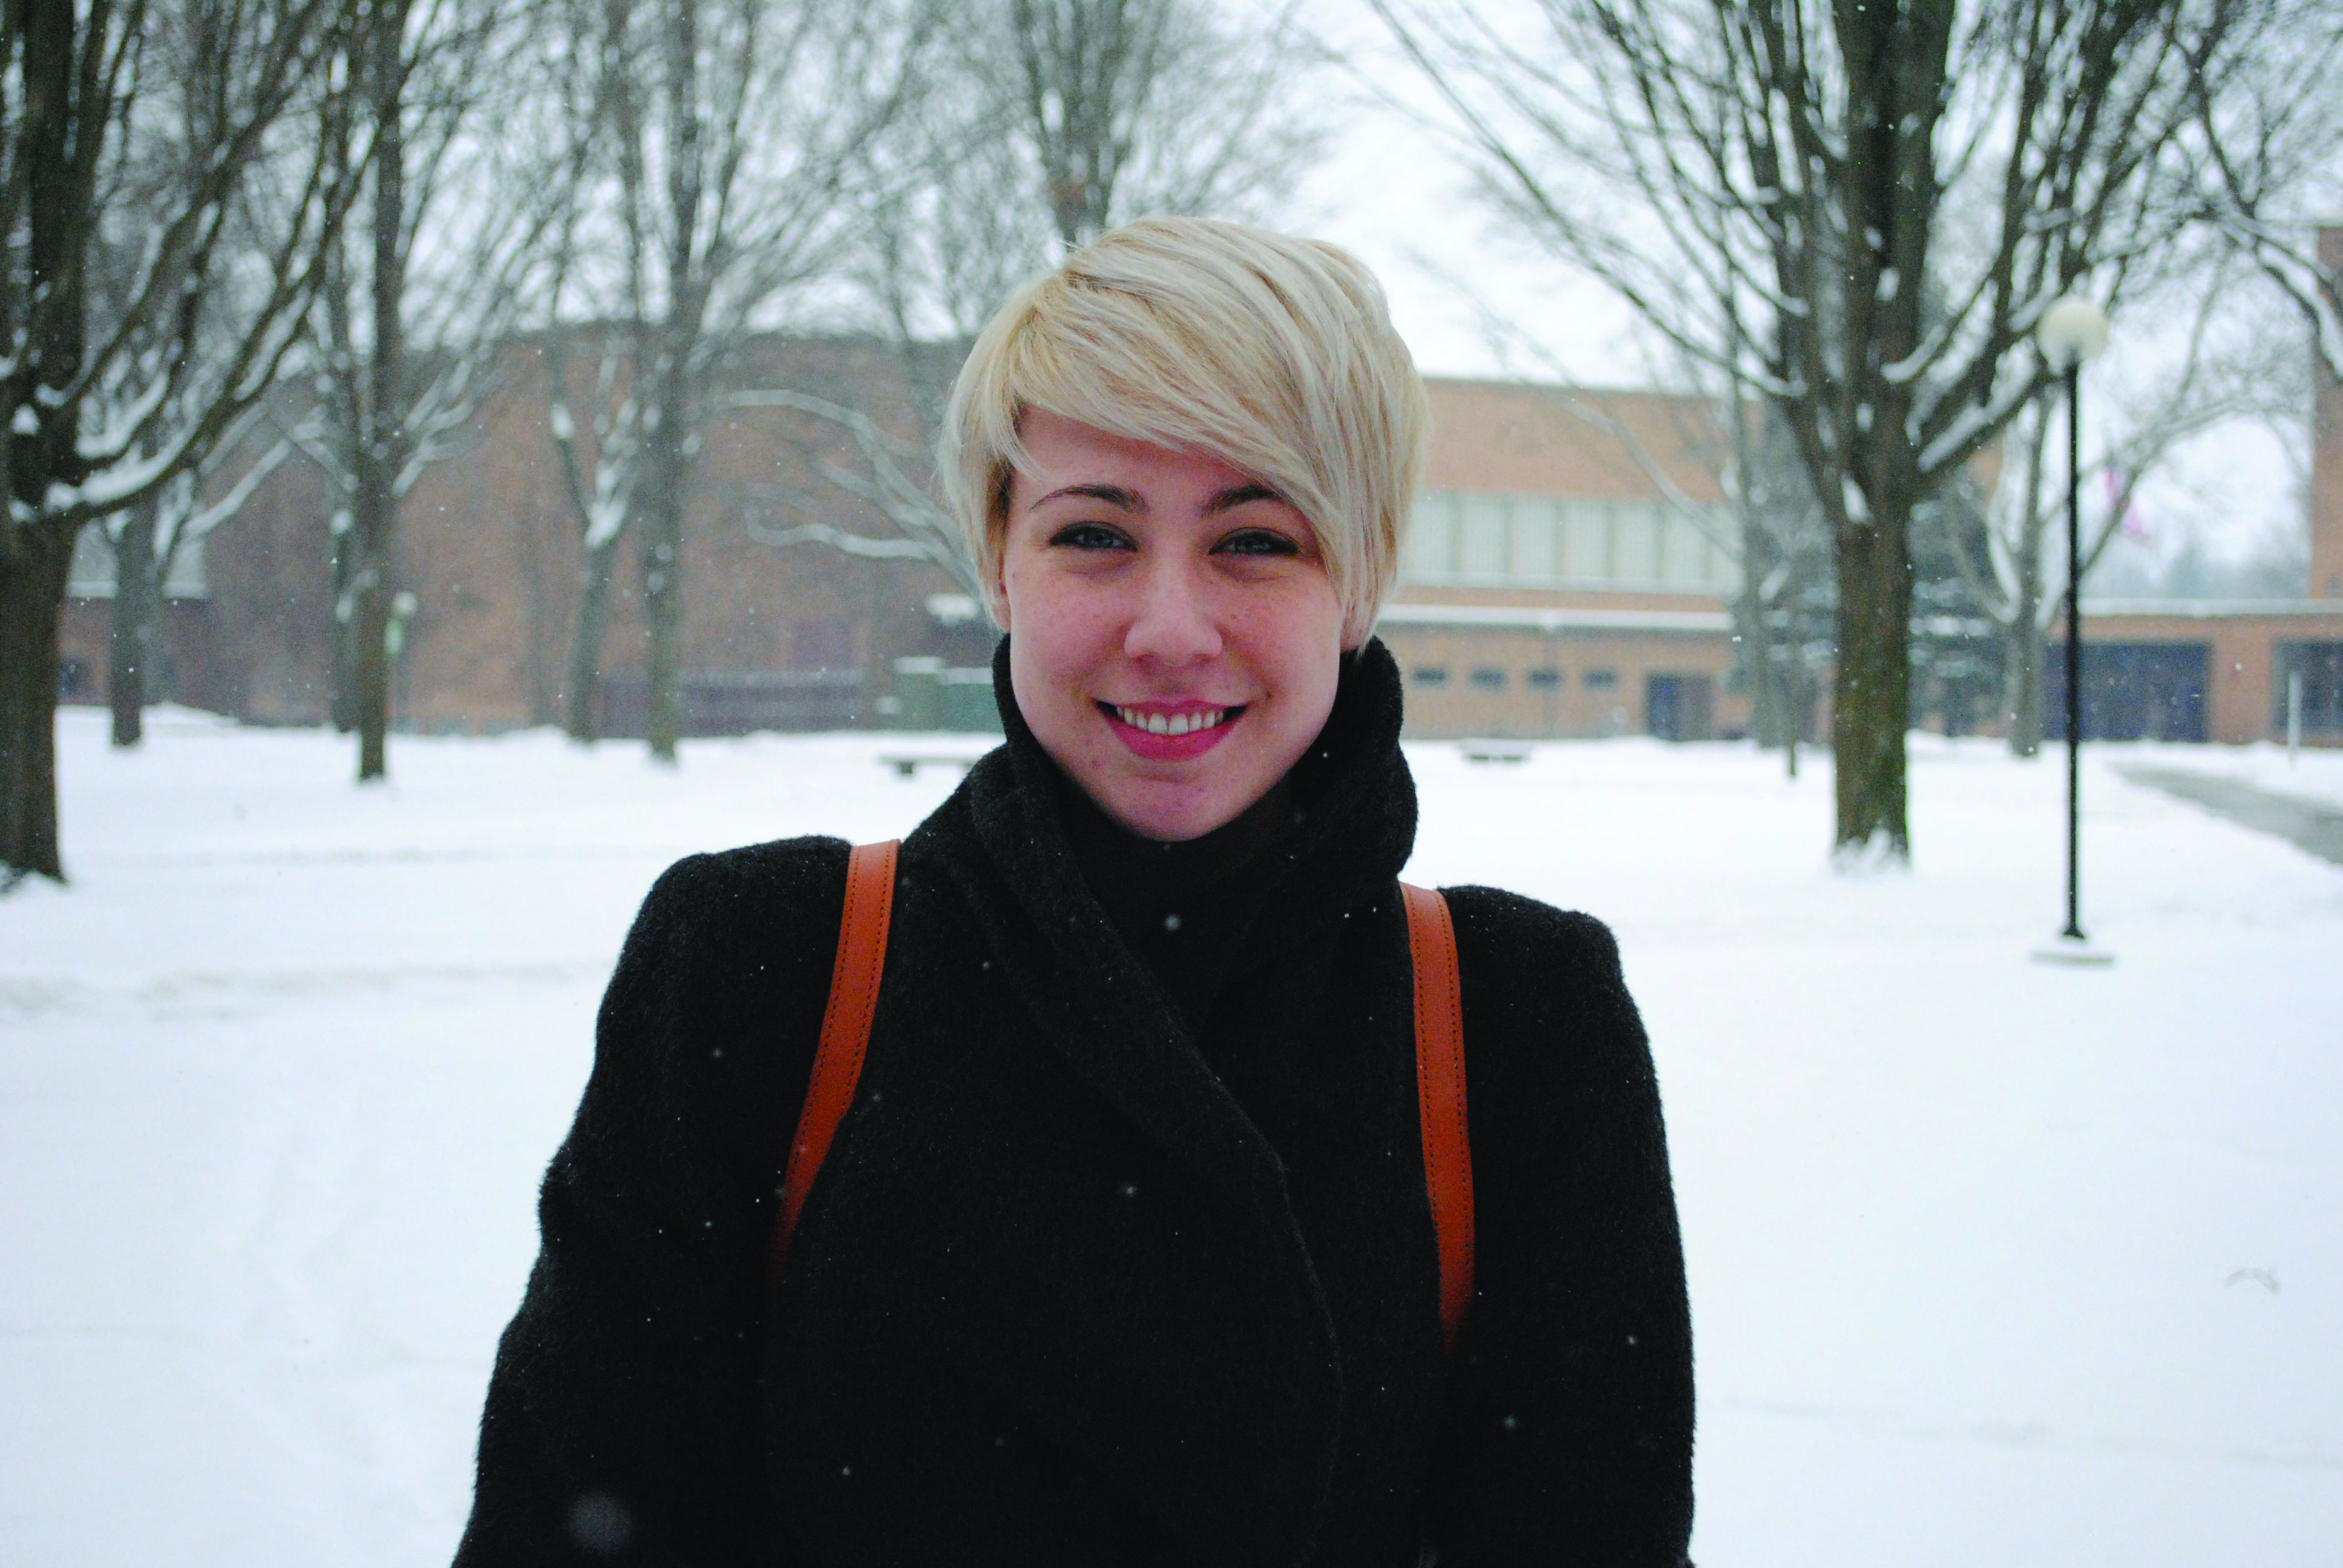 Portrait of Devon Barnes Spitler on a snowy campus